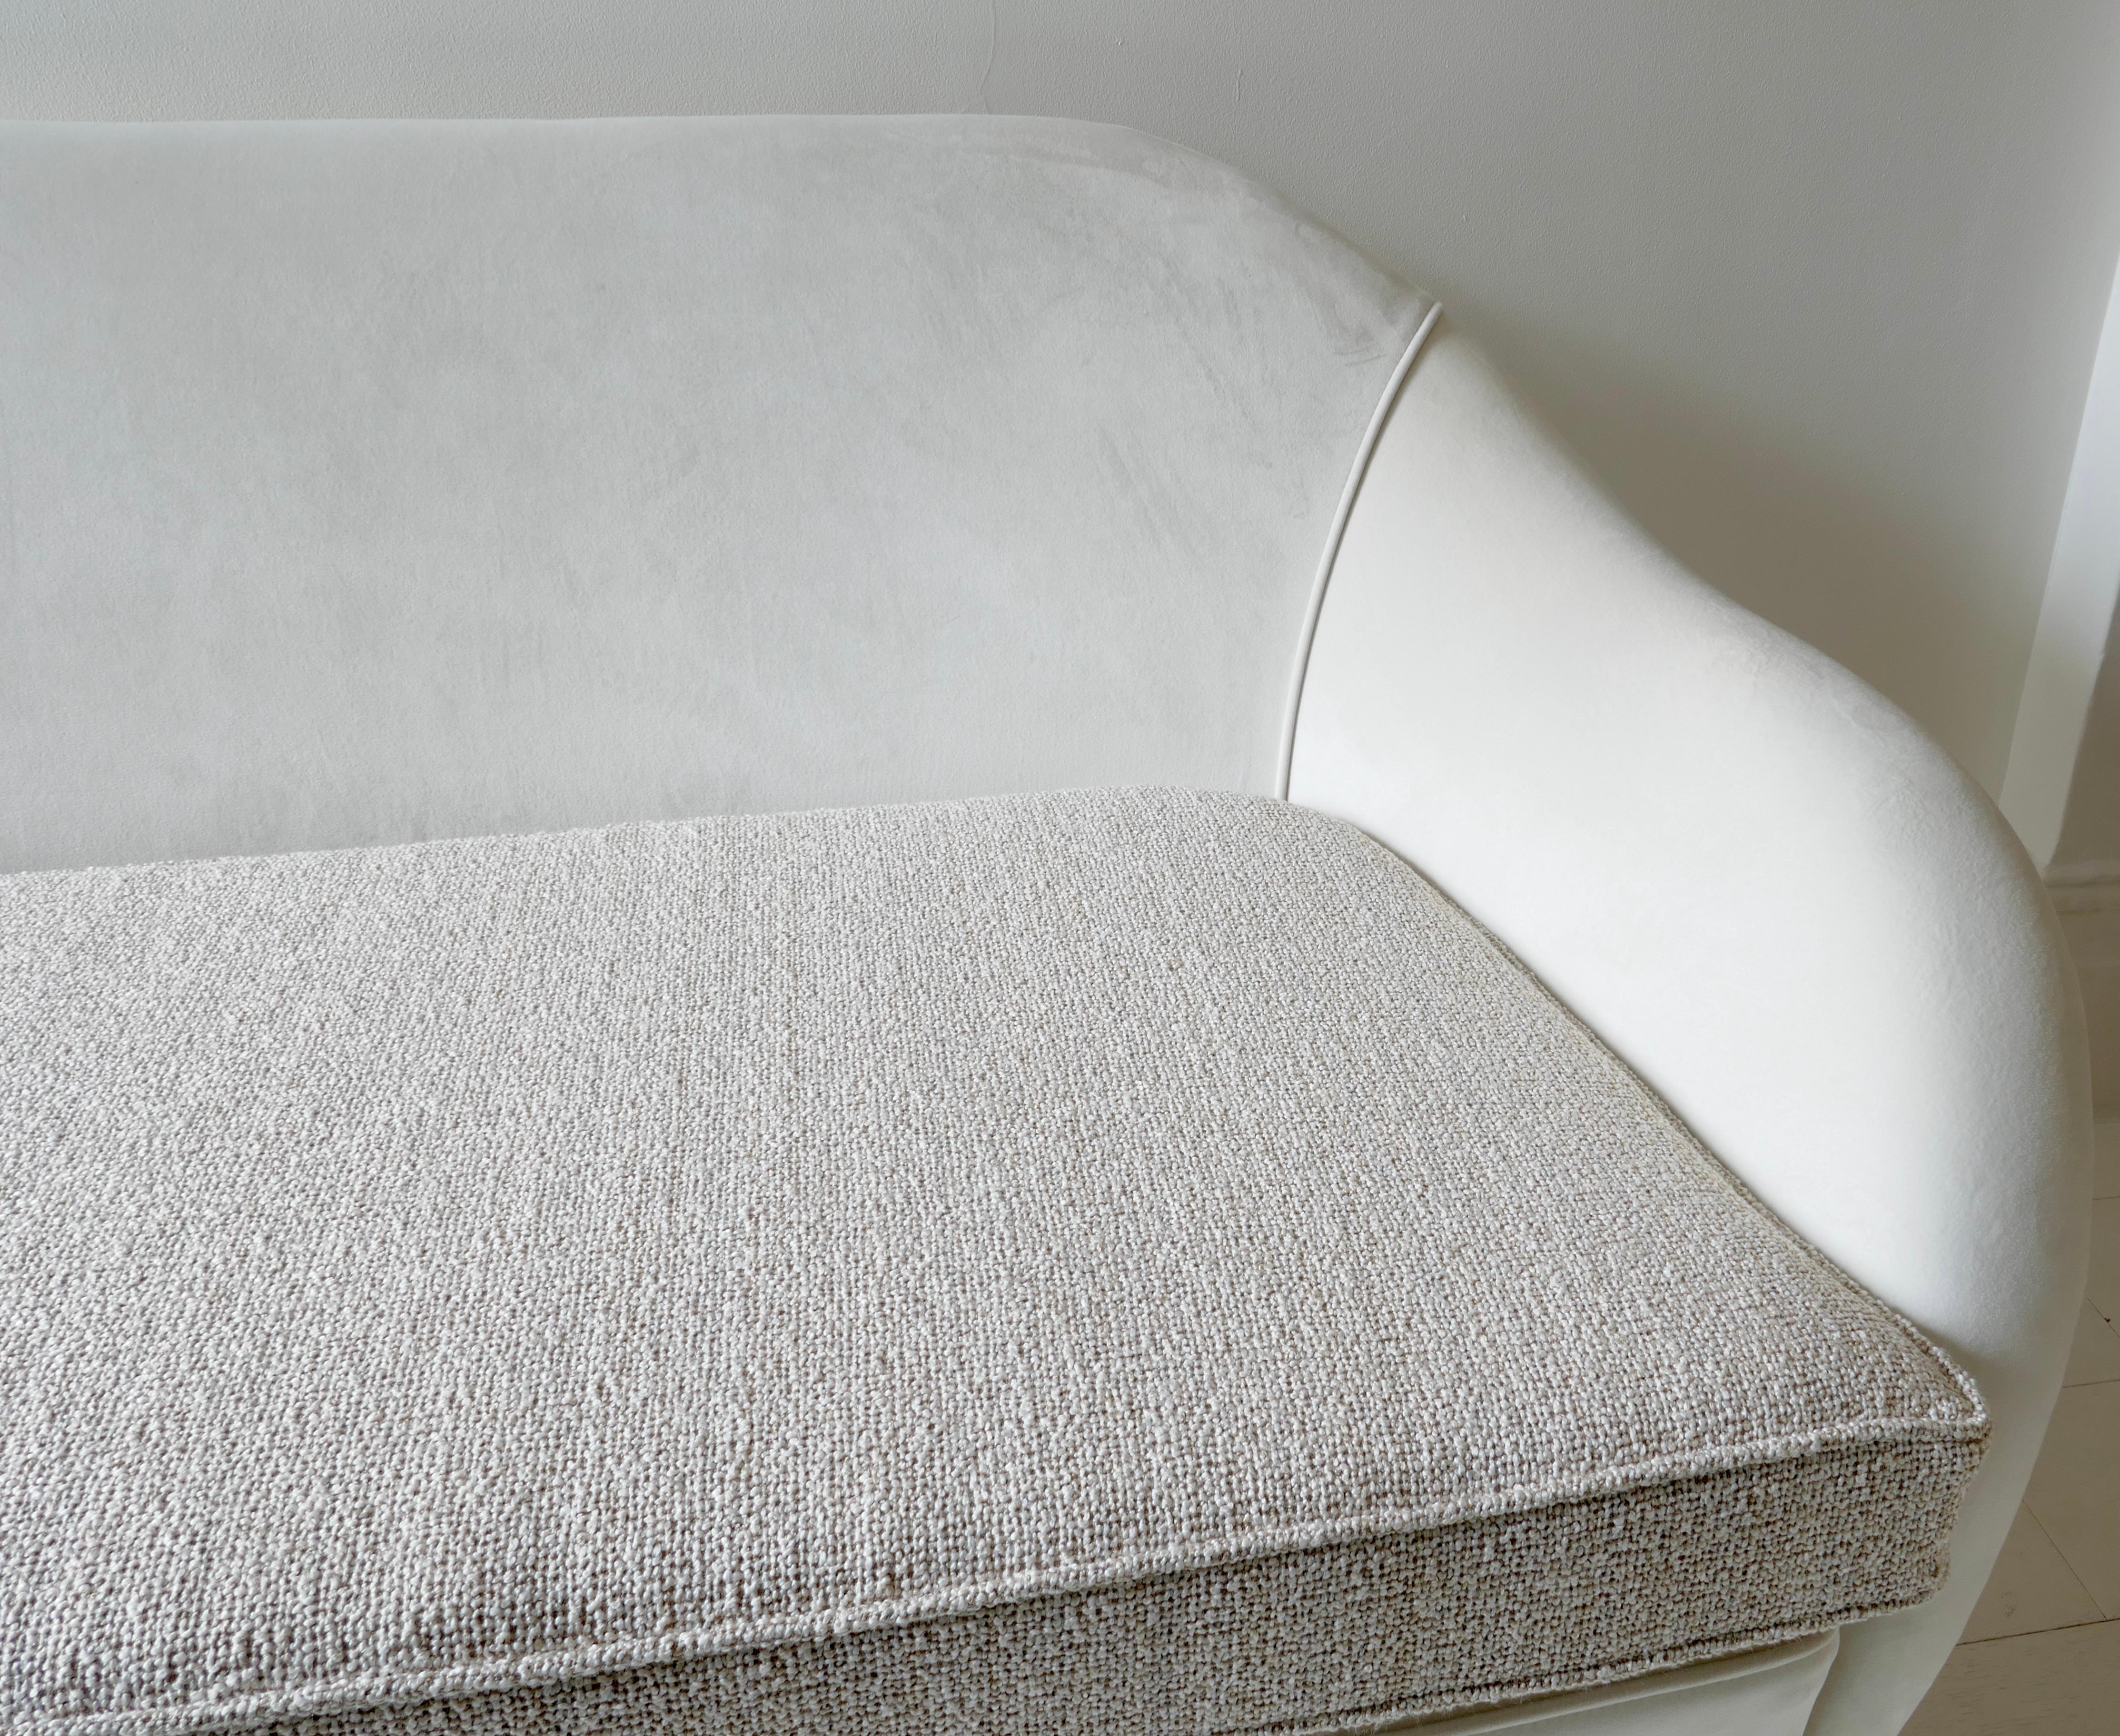 Italienisches Zweisitzer-Sofa, 1950er Jahre, neu gepolstert mit weißem Samt und weißem Boucle für das Sitzkissen und mit Holzbeinen.
Perfekt für ein Wohnzimmer, um zusätzliche Sitzplätze zu schaffen, ohne zu viel Platz zu beanspruchen. Auch ideal